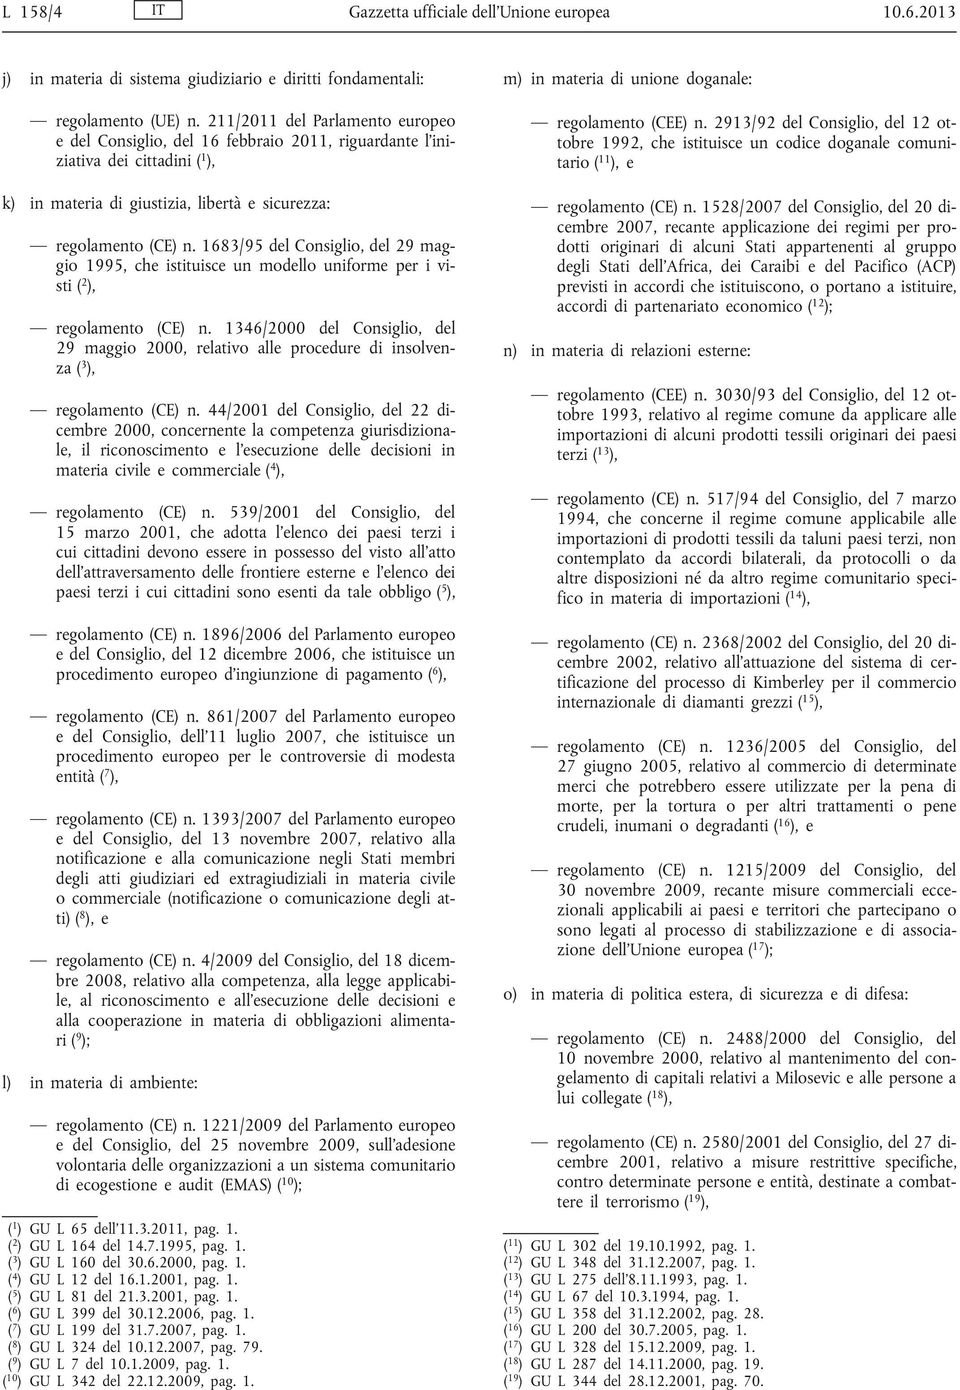 1683/95 del Consiglio, del 29 maggio 1995, che istituisce un modello uniforme per i visti ( 2 ), regolamento (CE) n.